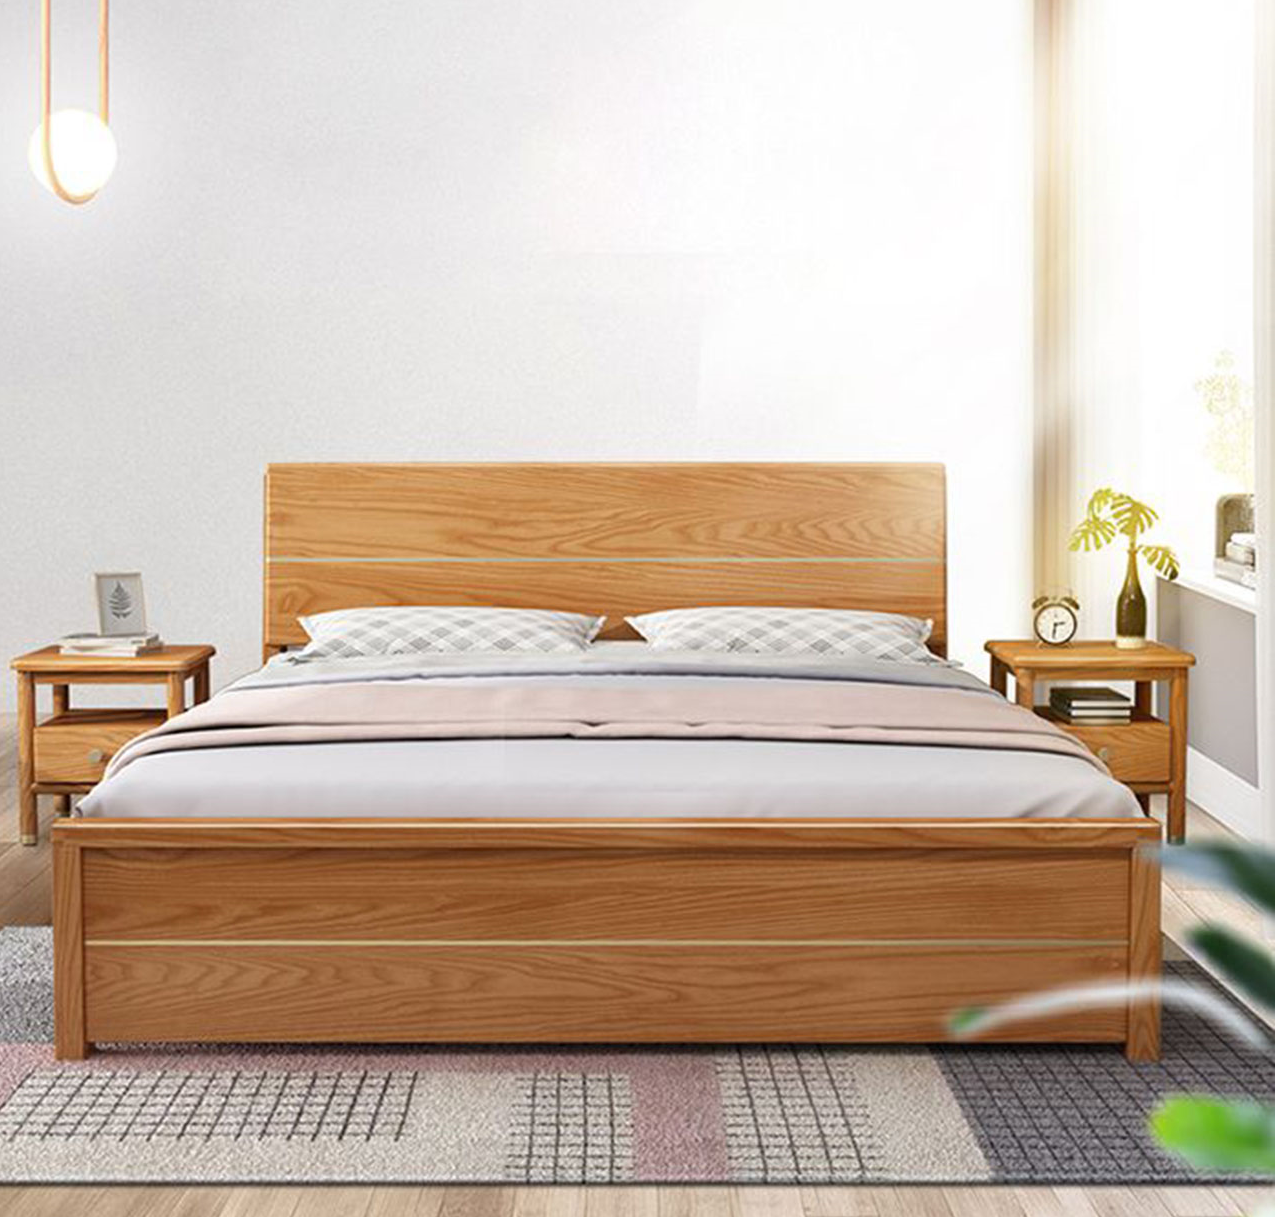 Giường gỗ sồi đẹp rất bền bỉ theo thời gian